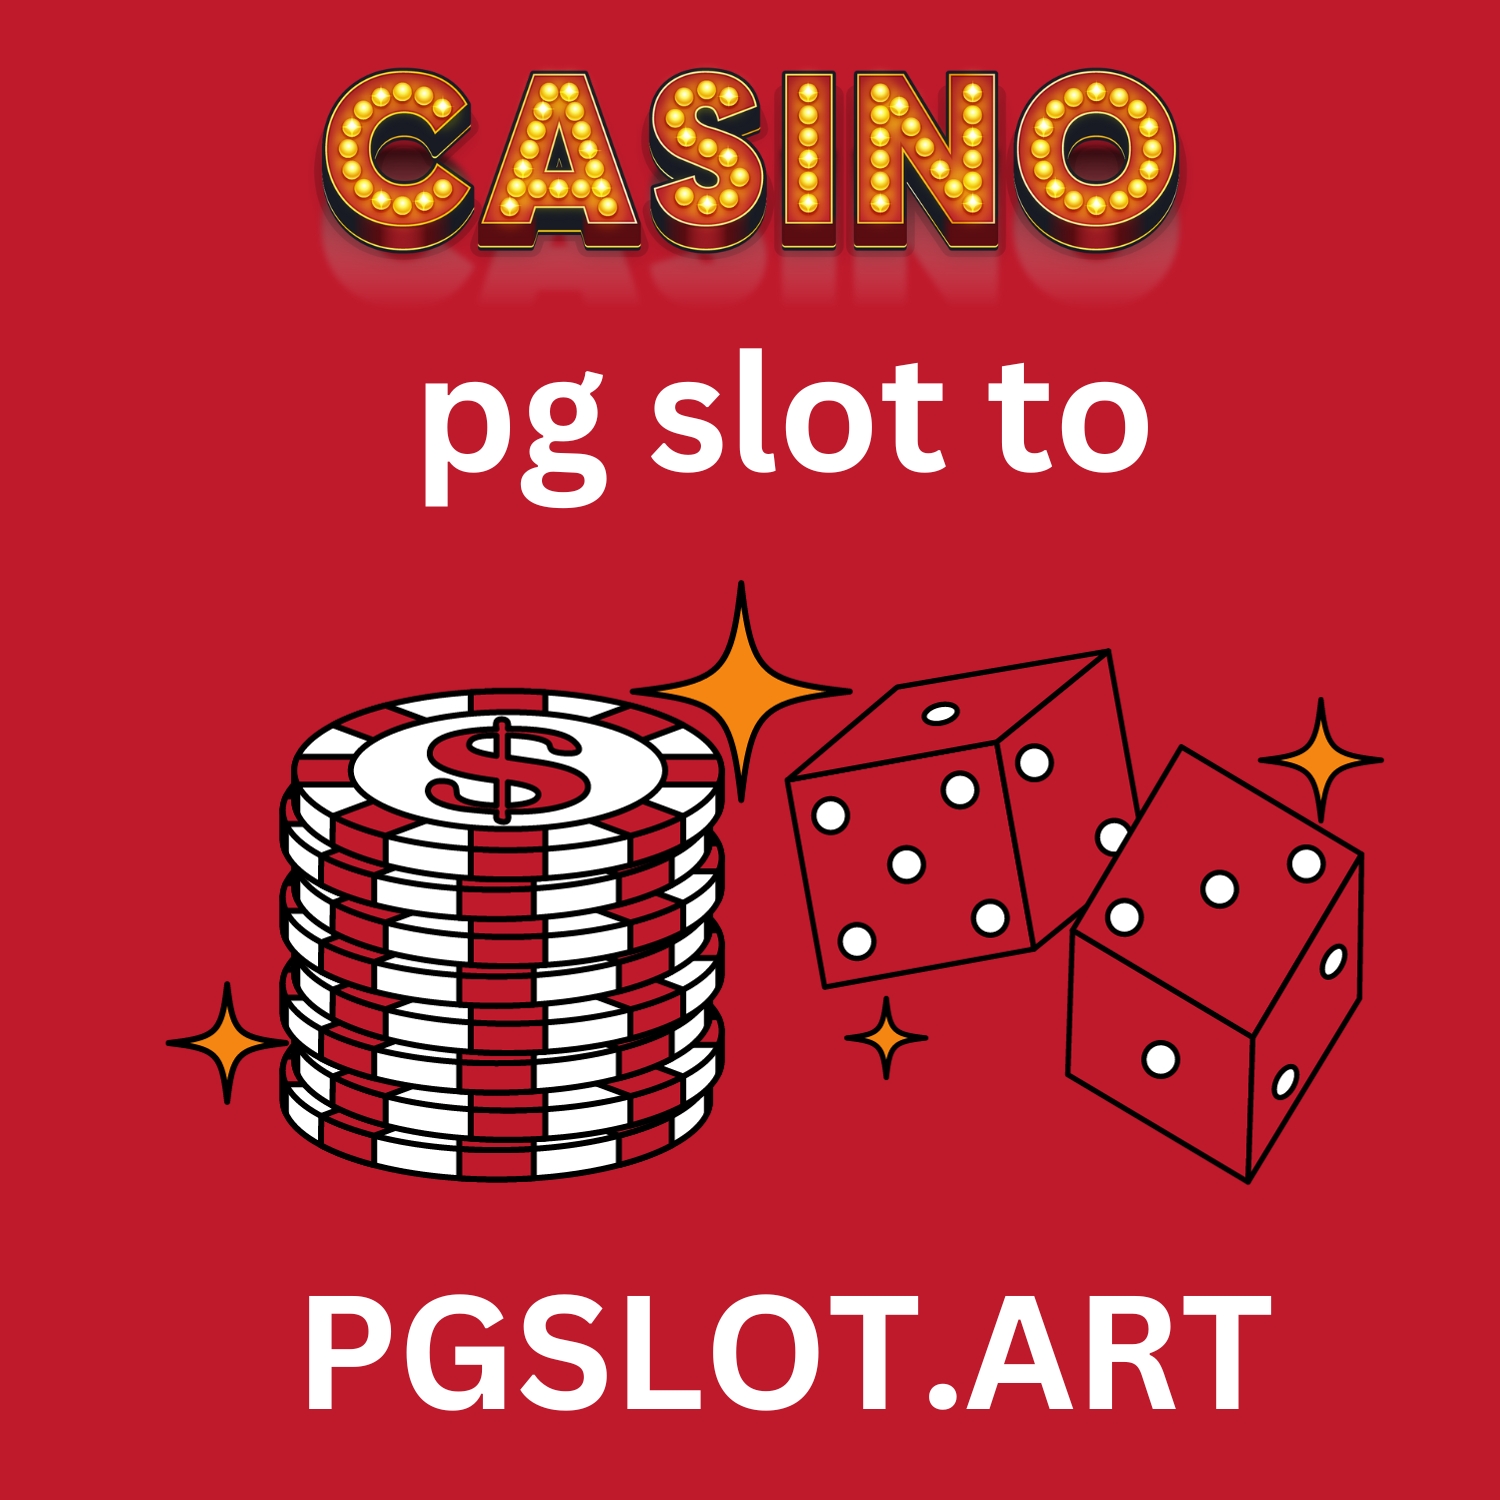 PG Slot To: โลกแห่งความสนุกและโชคลาภที่คุณจะต้องสัมผัสในทุกรอบของการเล่นสล็อต